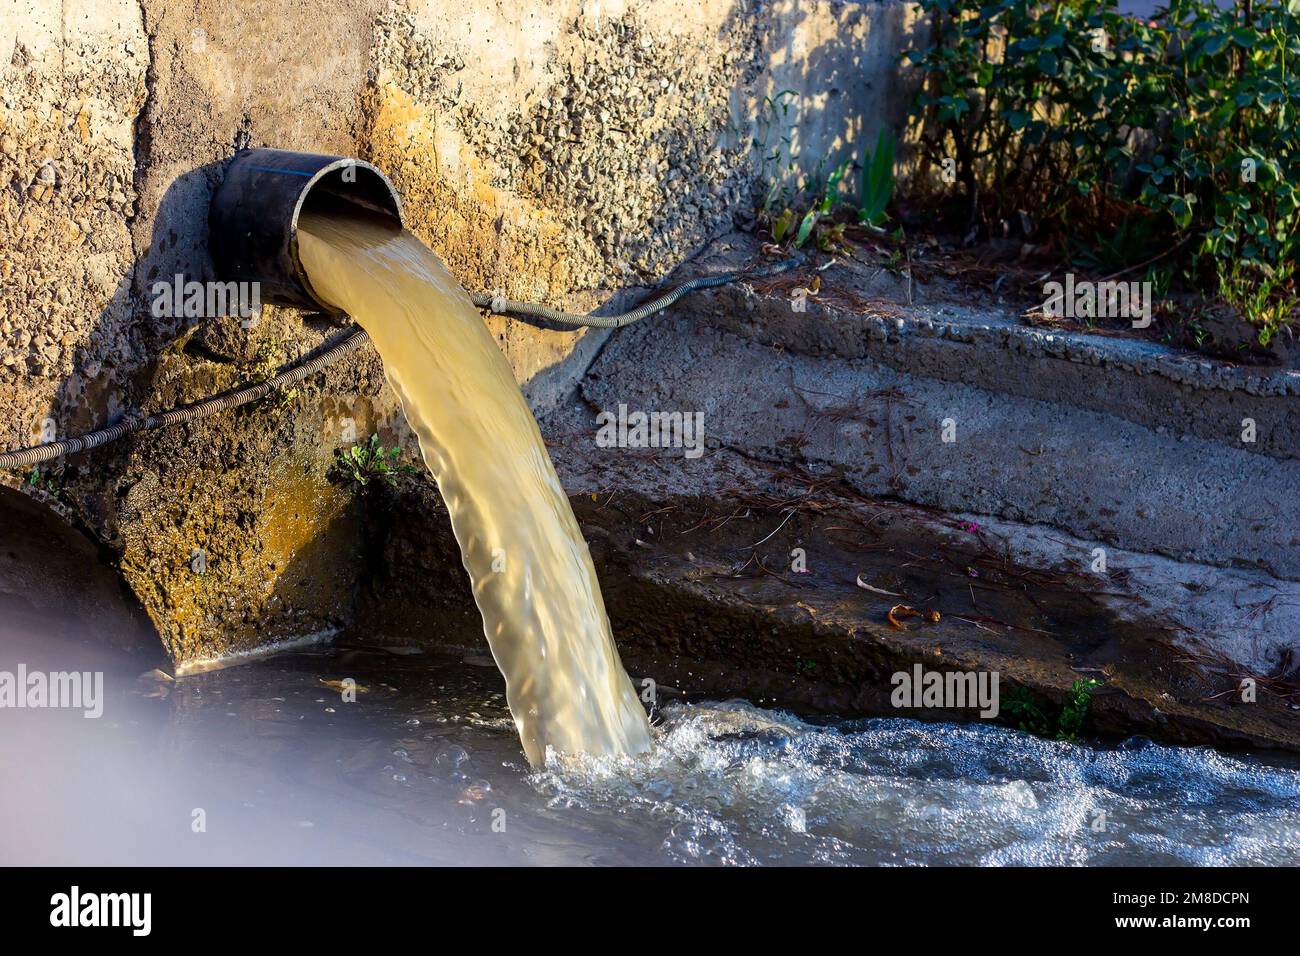 Die Abwasserabwasserleitung pumpt das verschmutzte Wasser in den Fluss. Wasserverschmutzung, Umweltkontaminationskonzept. Stockfoto